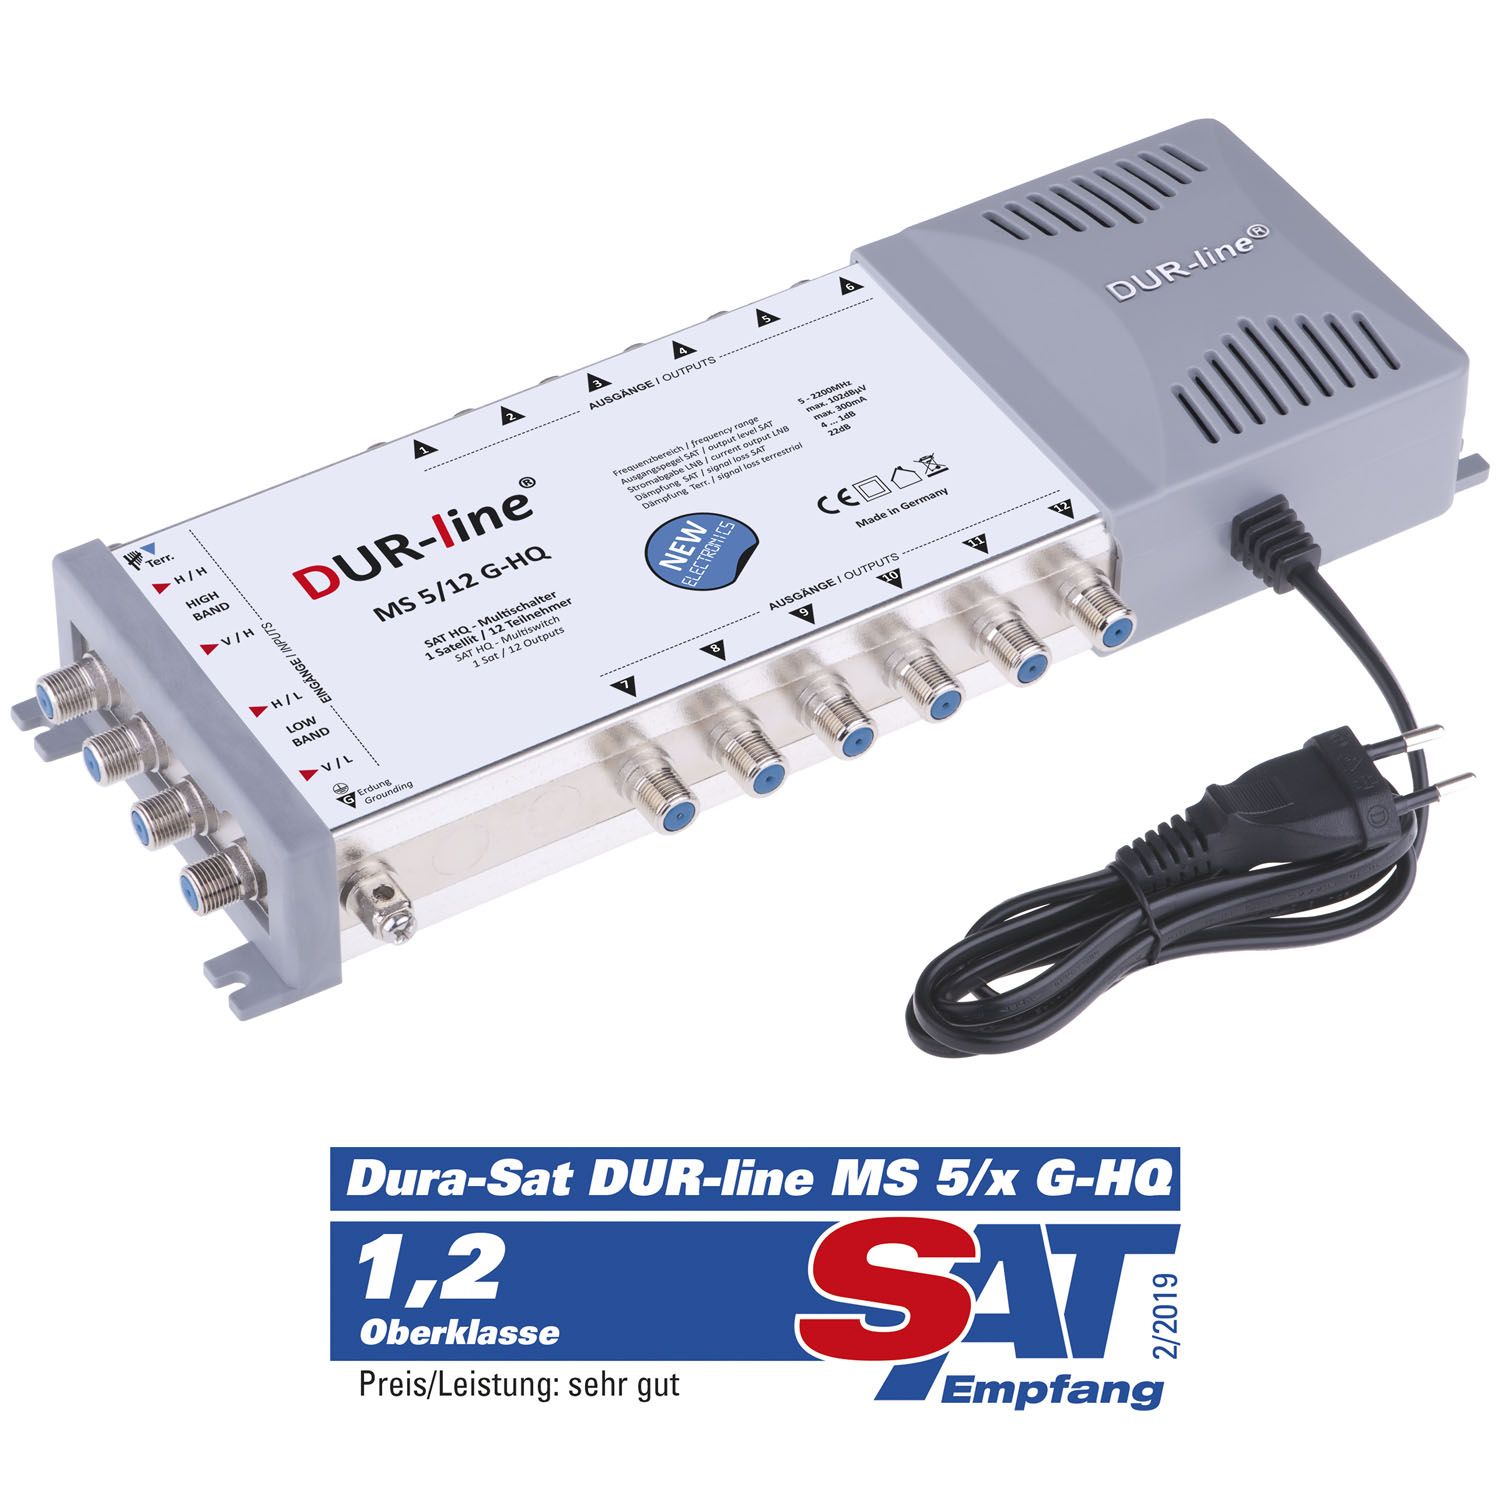 DUR-line MS 5/12 G-HQ - Multischalter